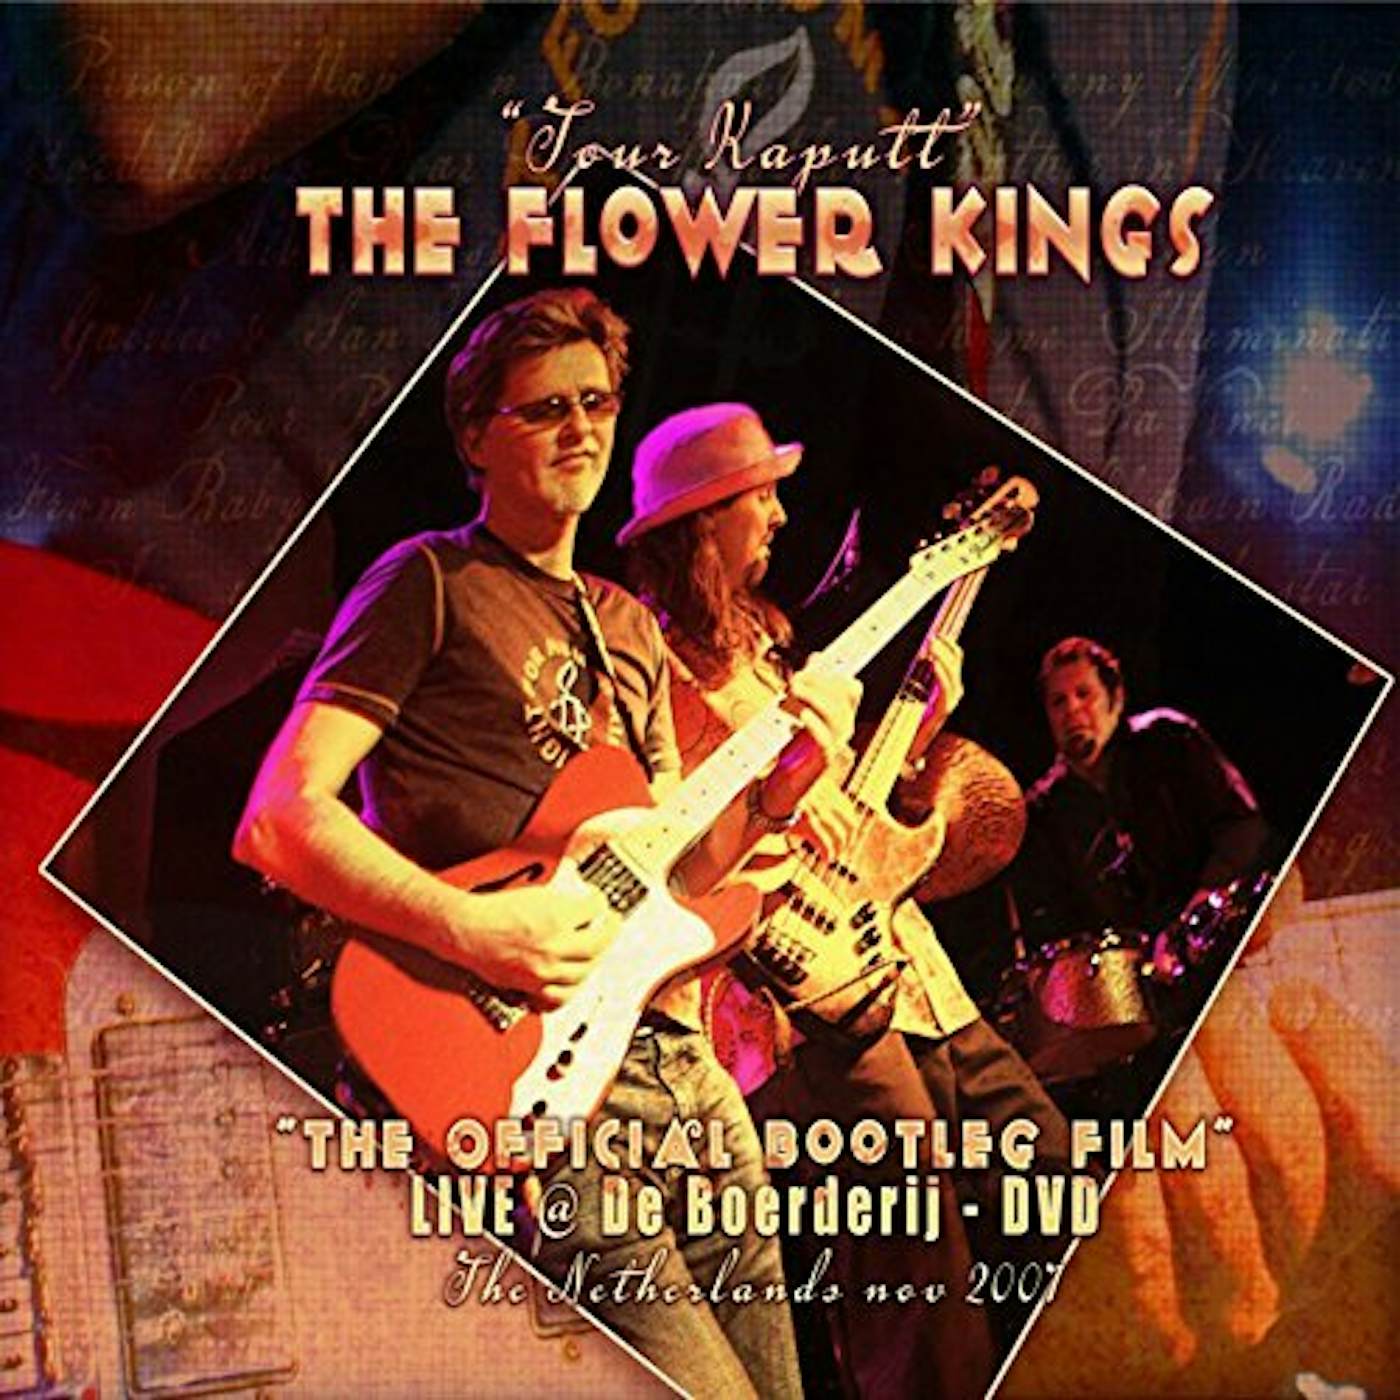 The Flower Kings TOUR KAPUTT DVD